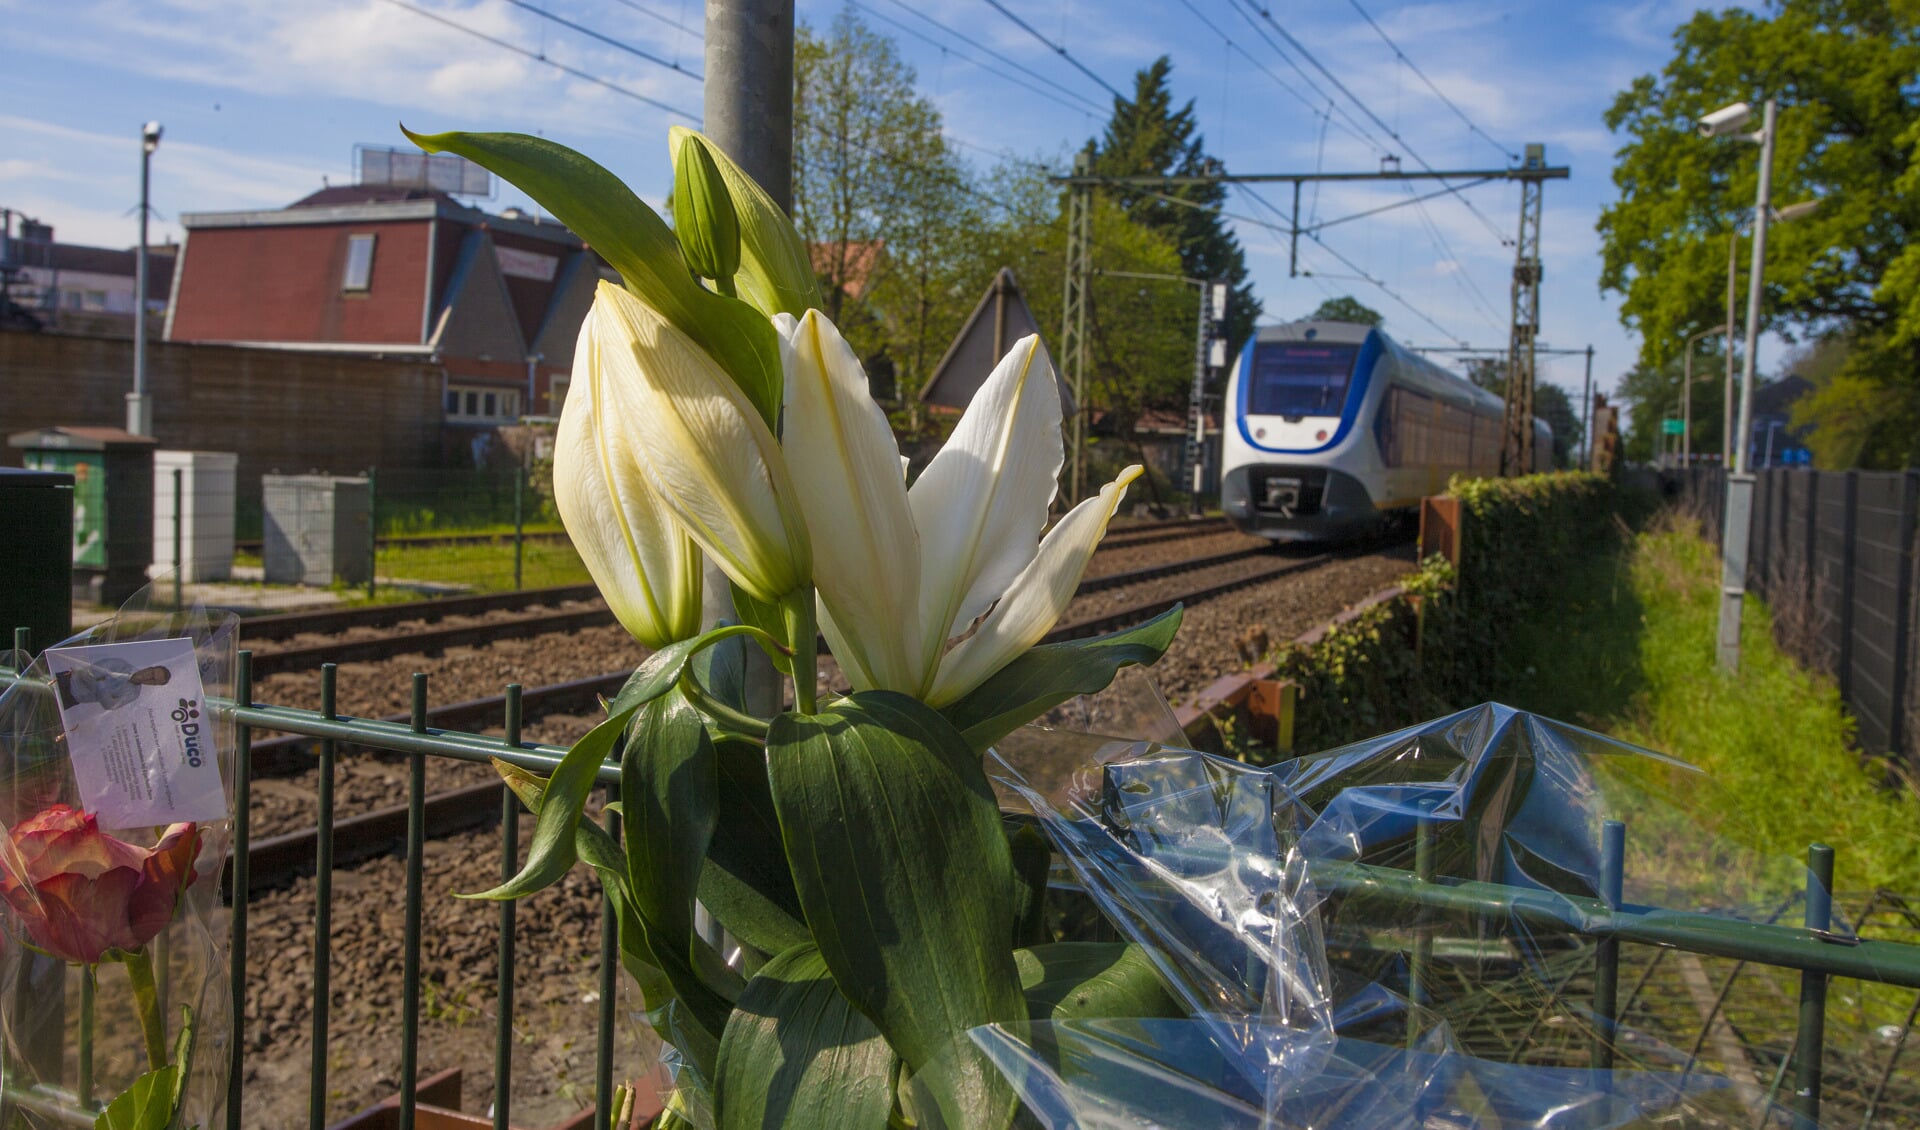 Bloemen als eerbetoon aan het overleden slachtoffer langs het spoor. 